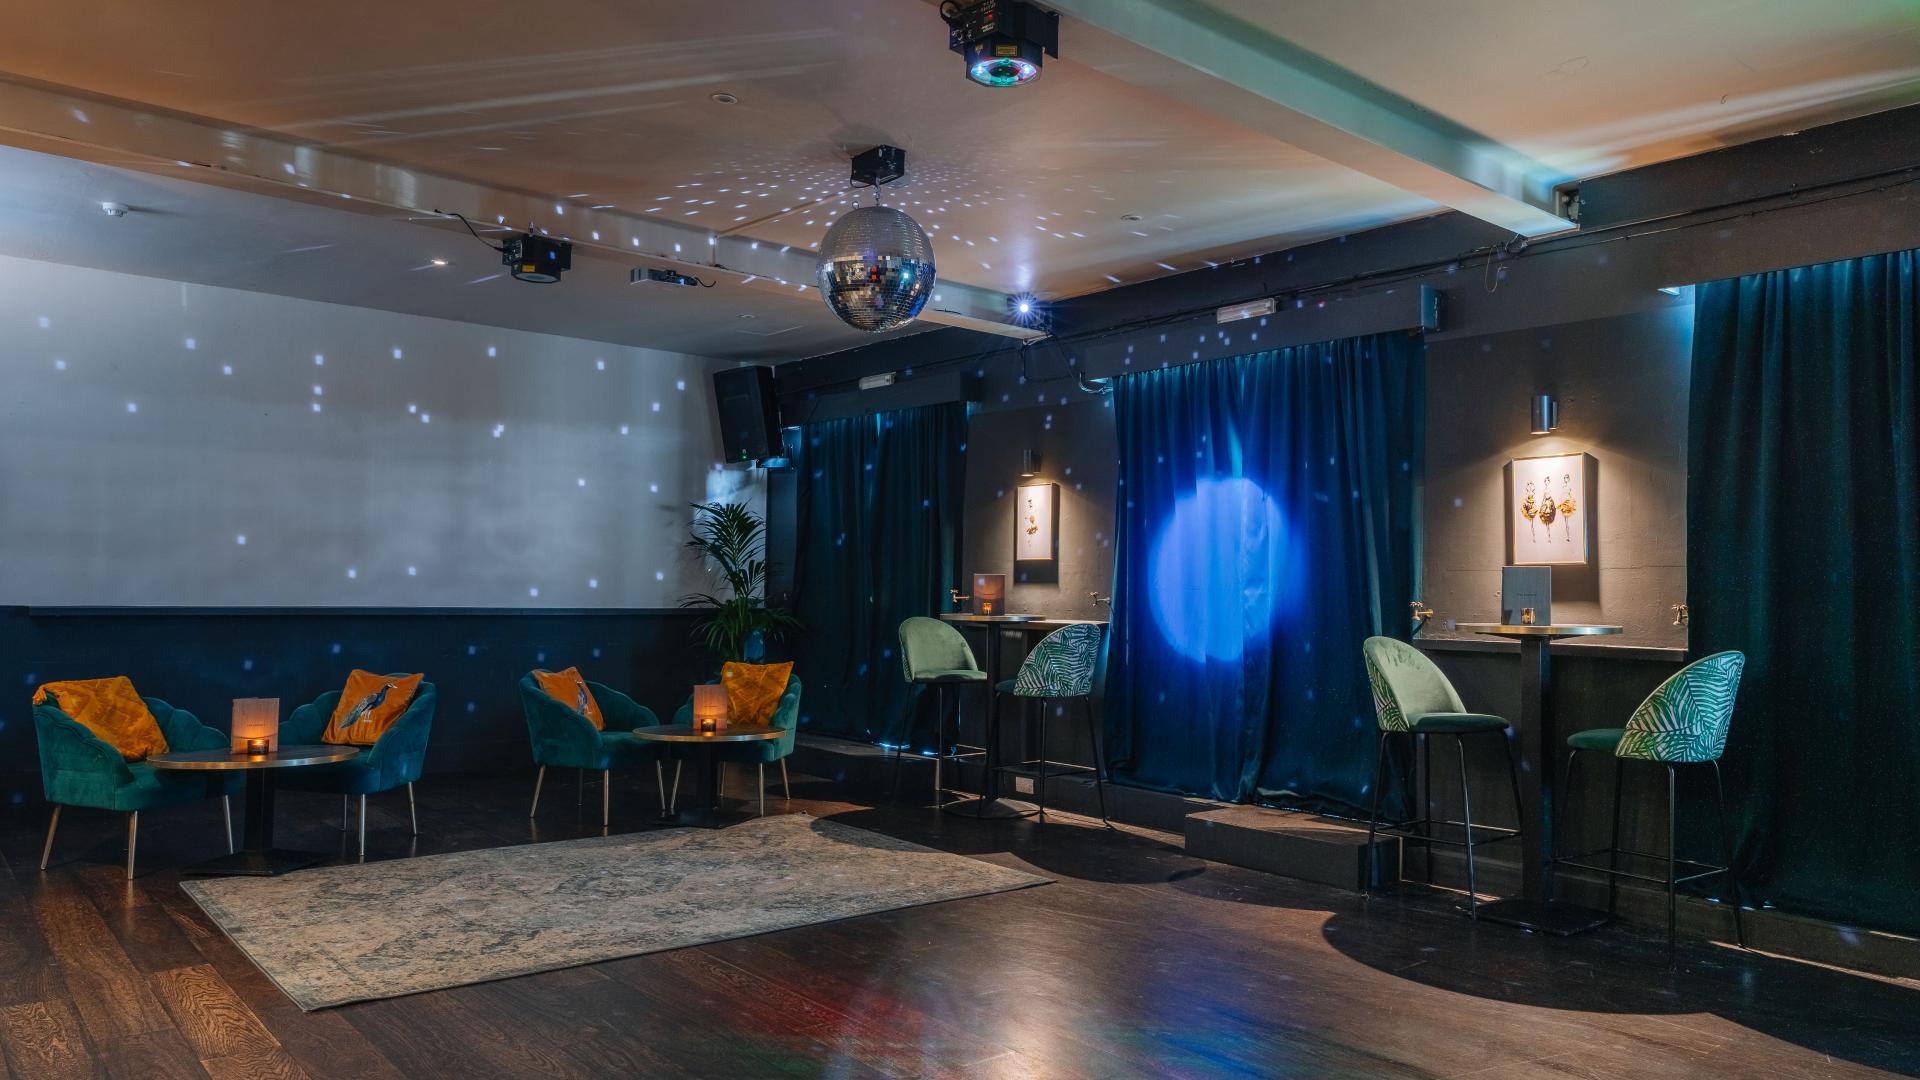 Karaoke Bars for Hire in London